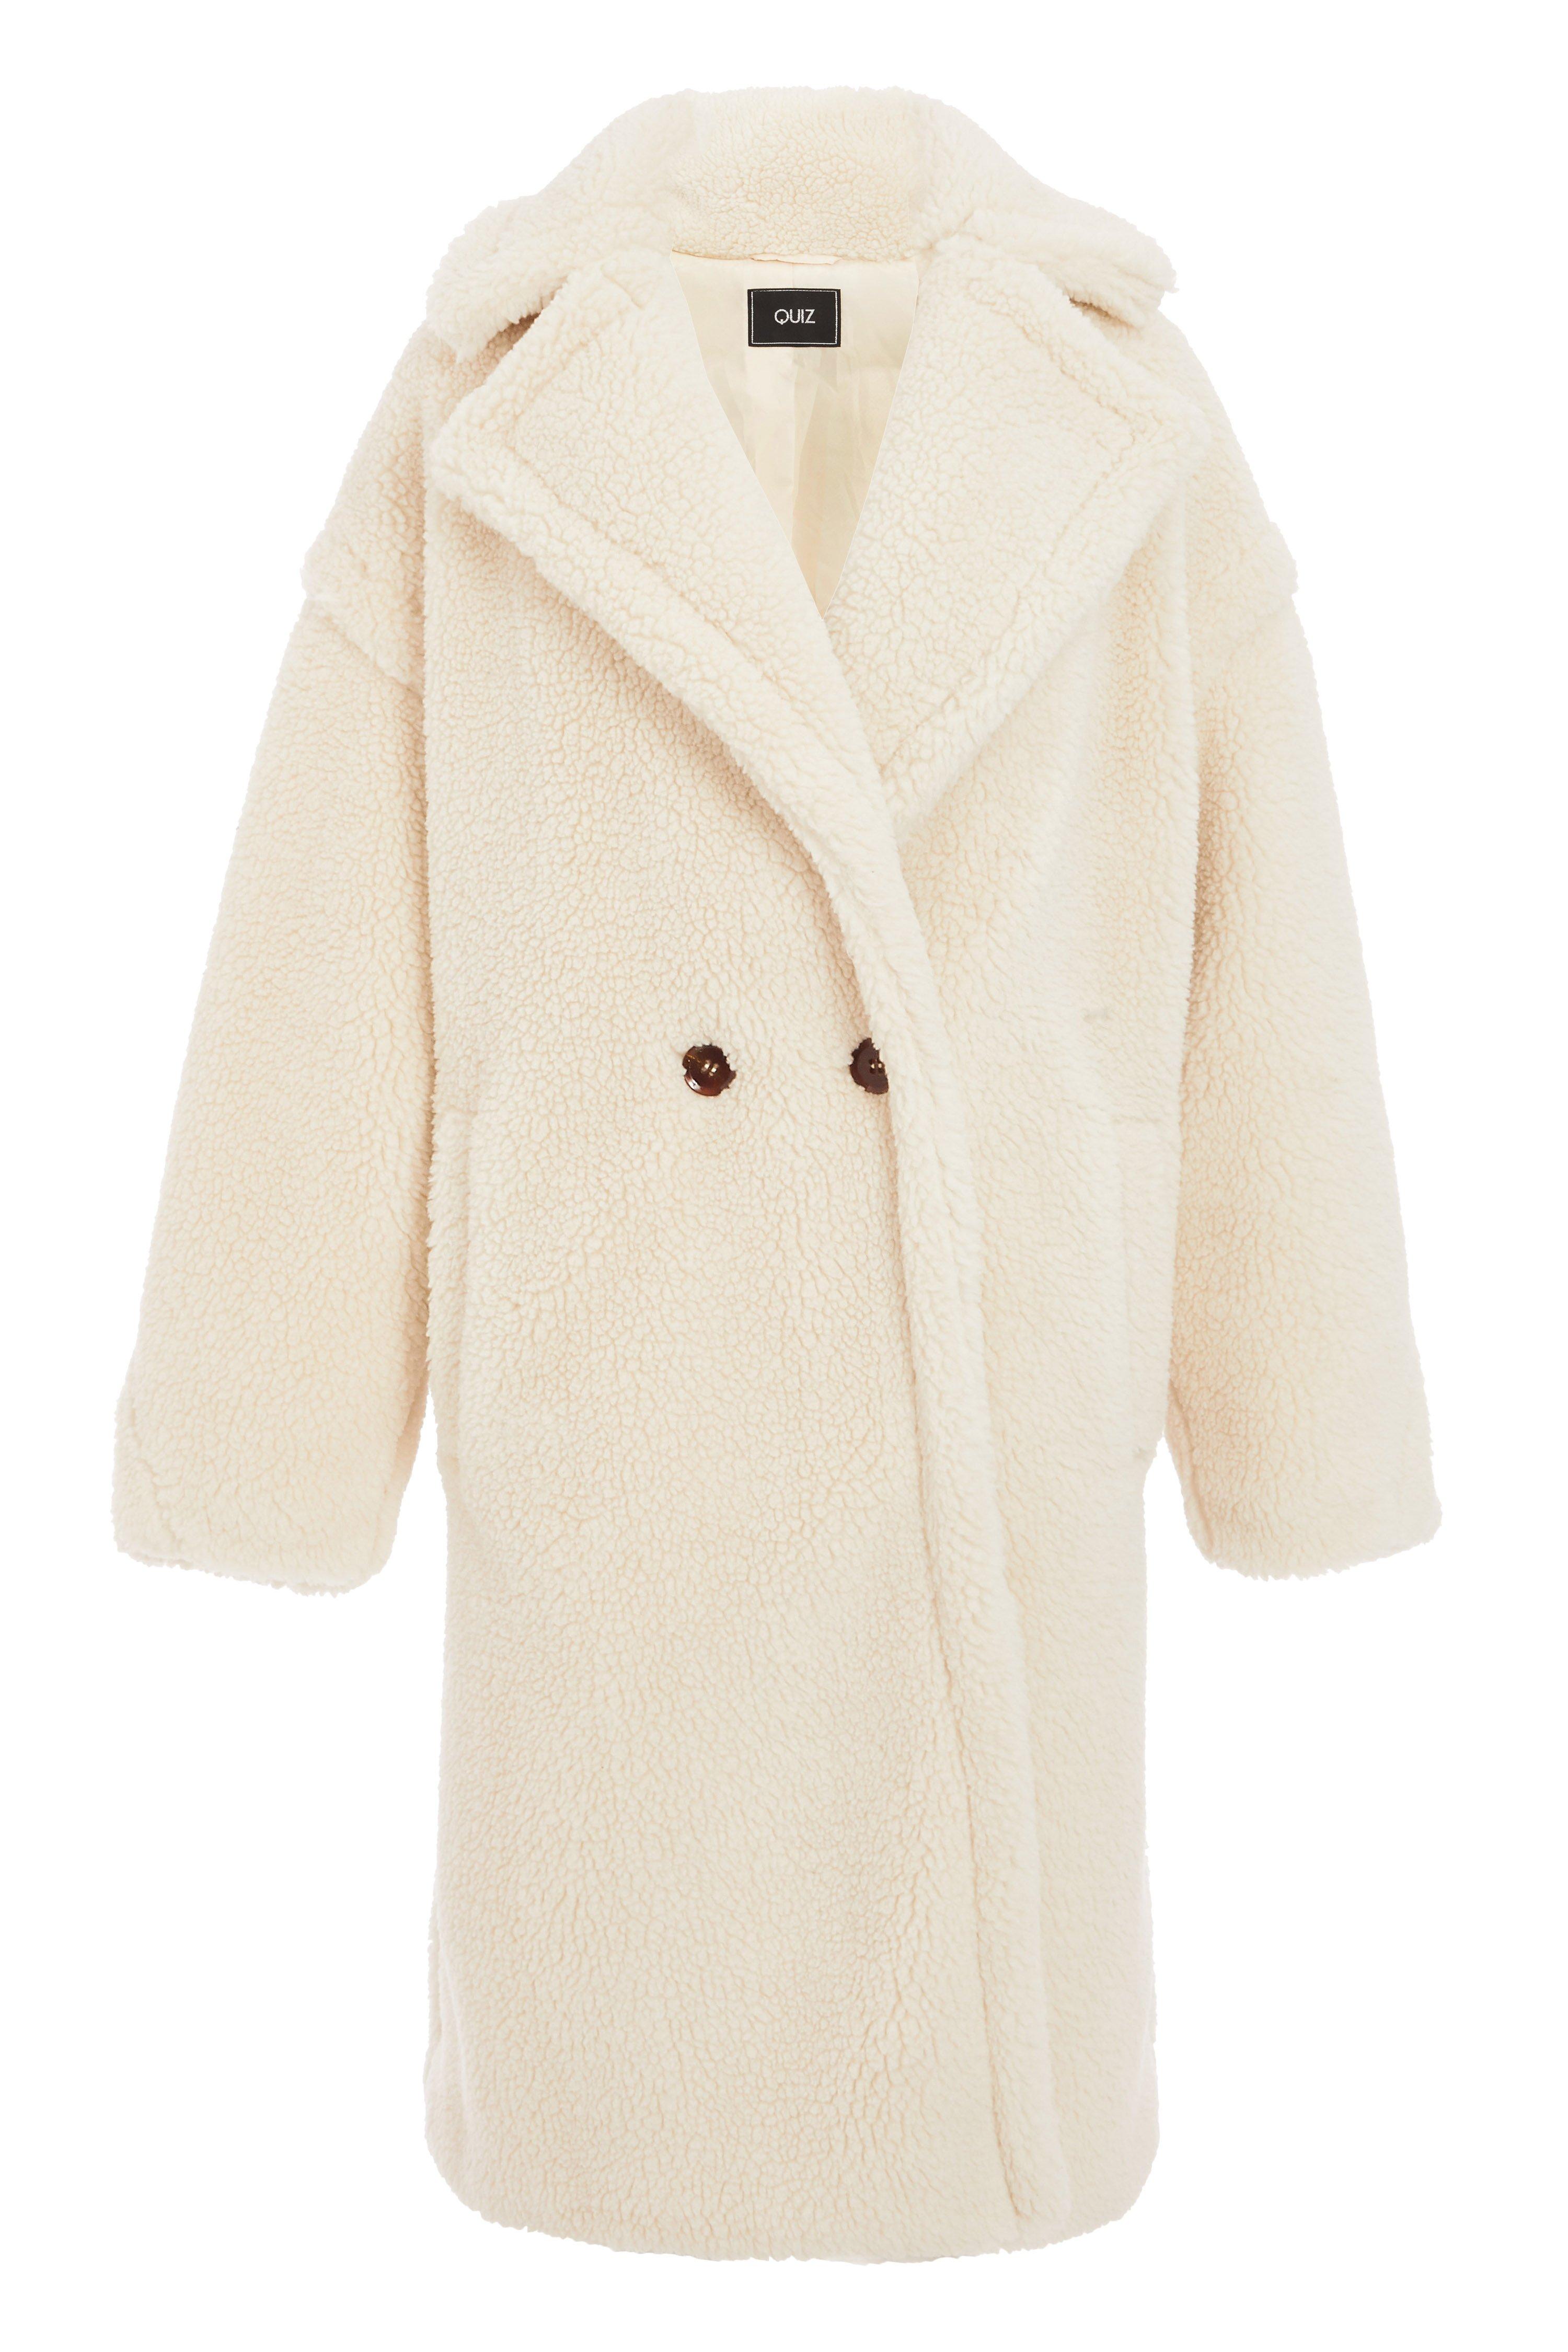 Cream Teddy Bear Faux Fur Long Jacket - Quiz Clothing